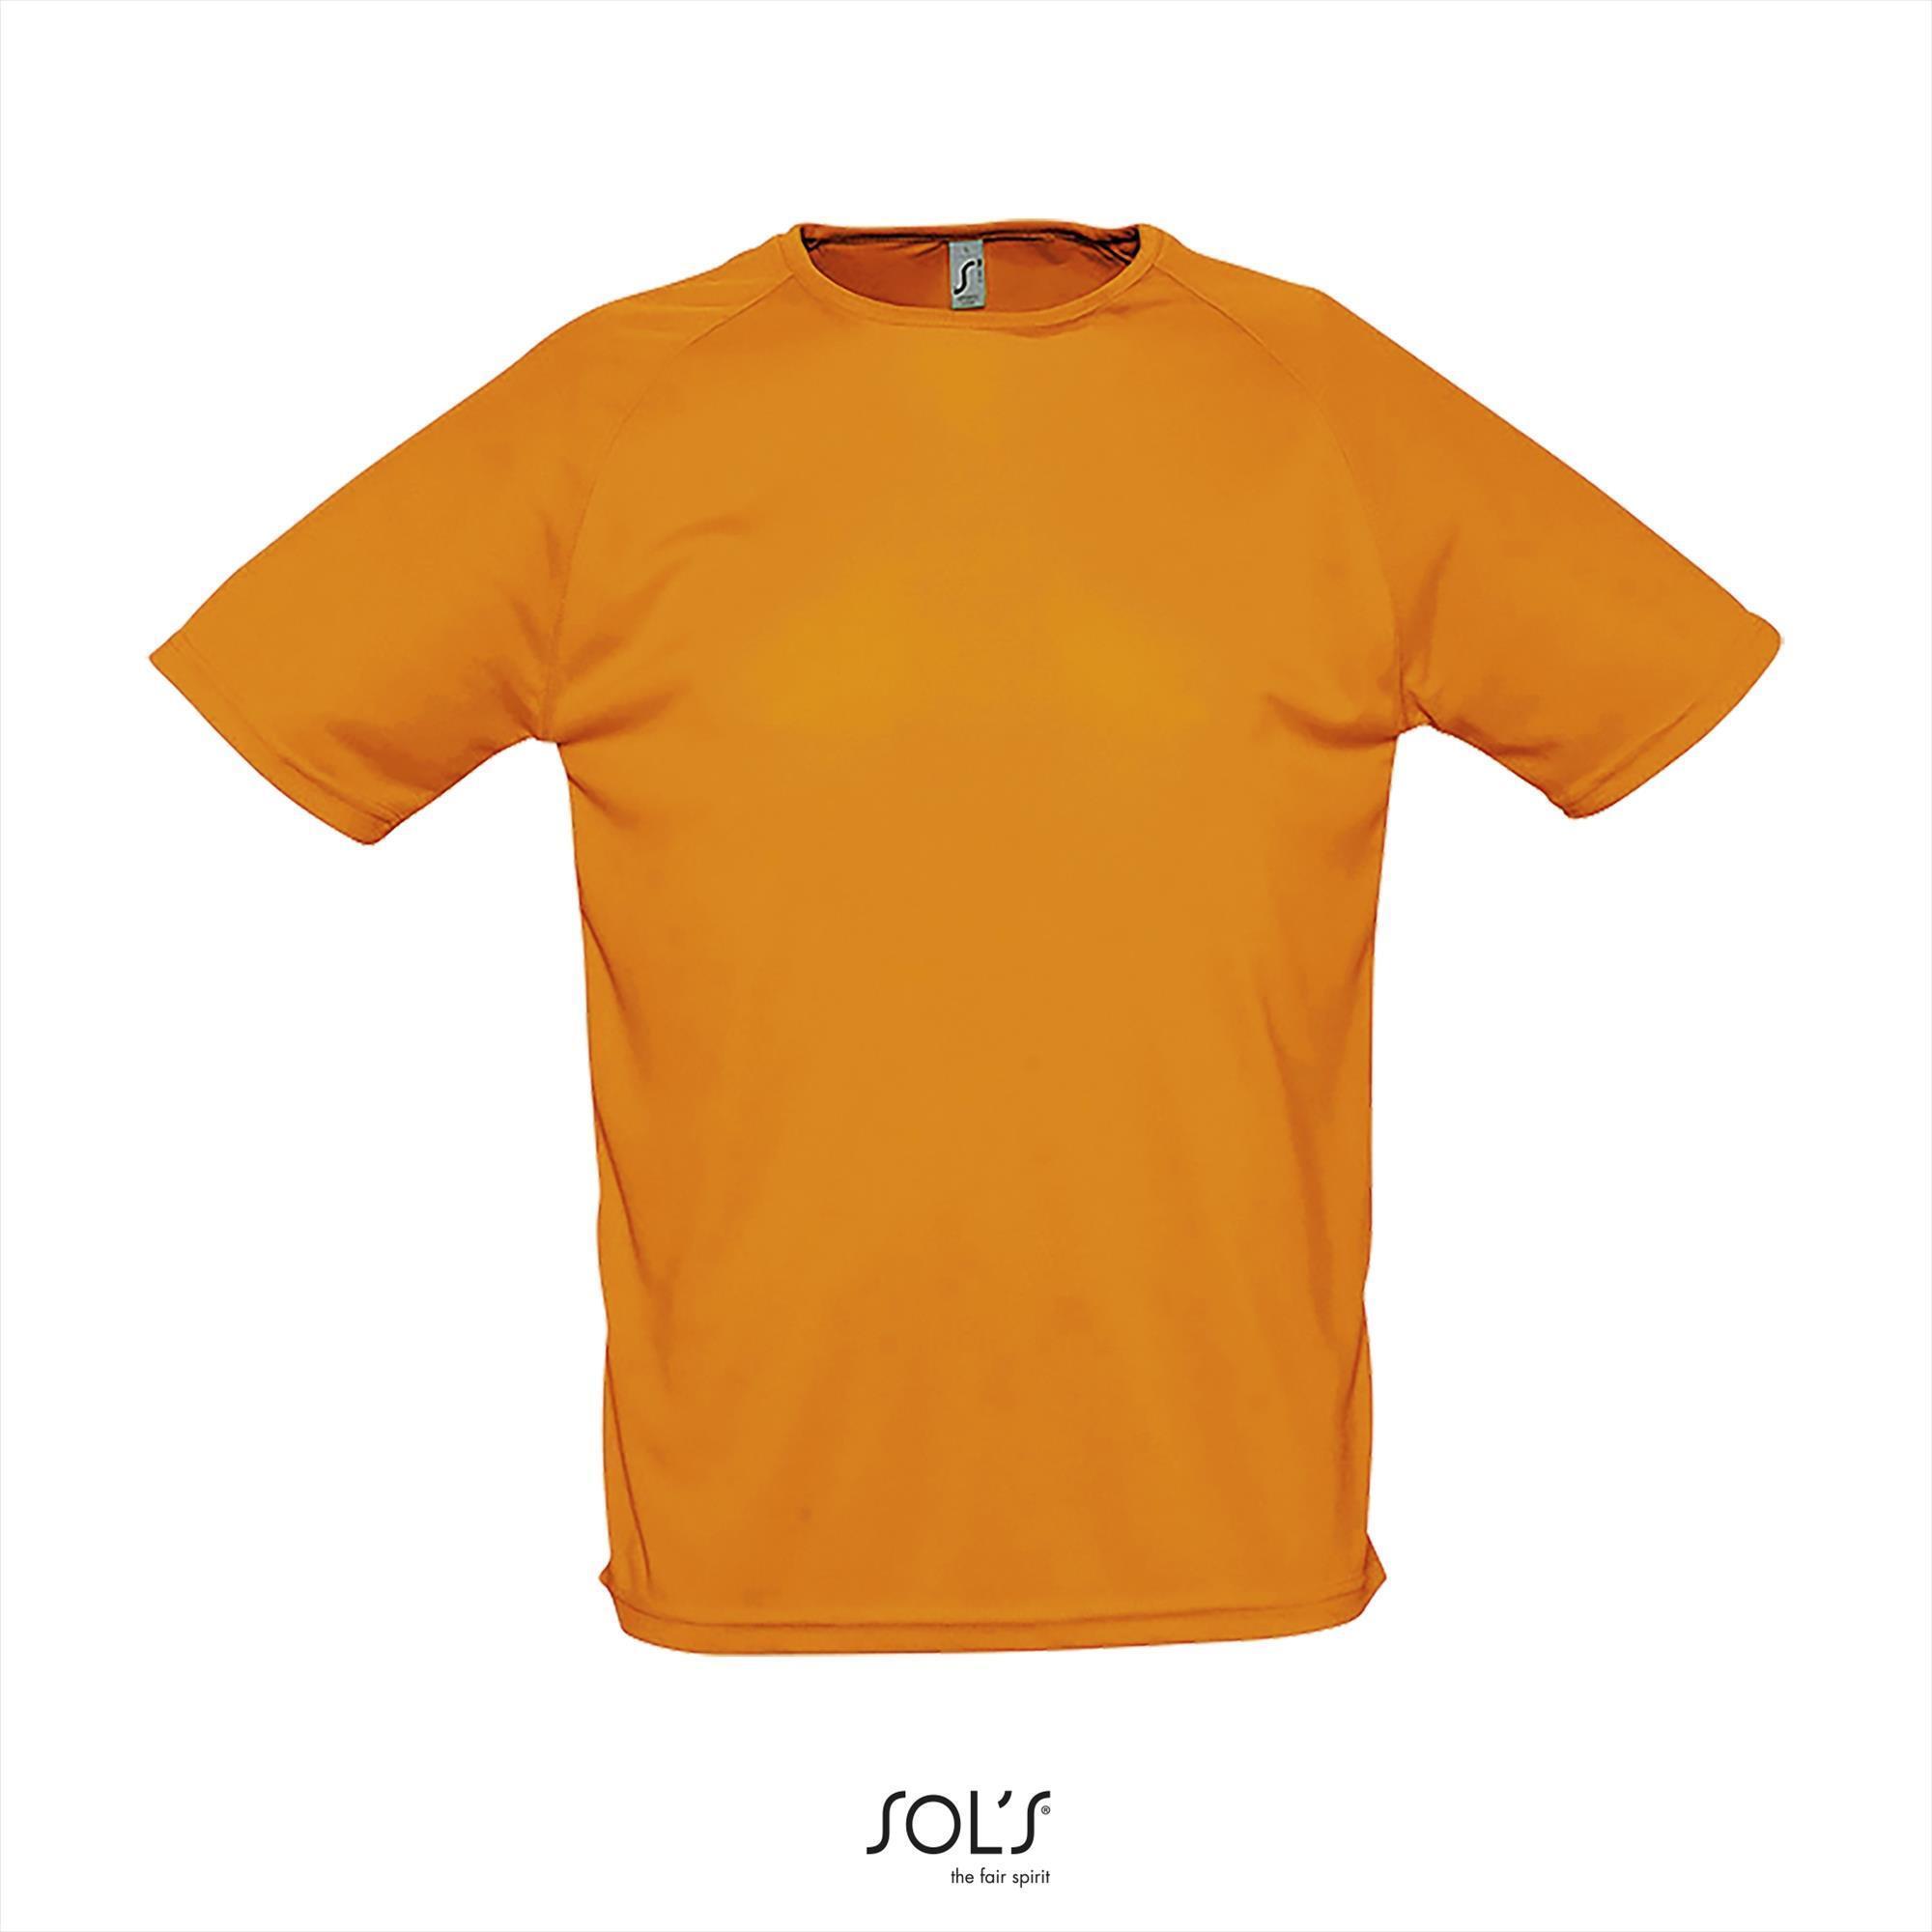 Heren sportshirt Neon oranje met ademend effect. Dri-FIT Polyester Voetballen EK WK oranje